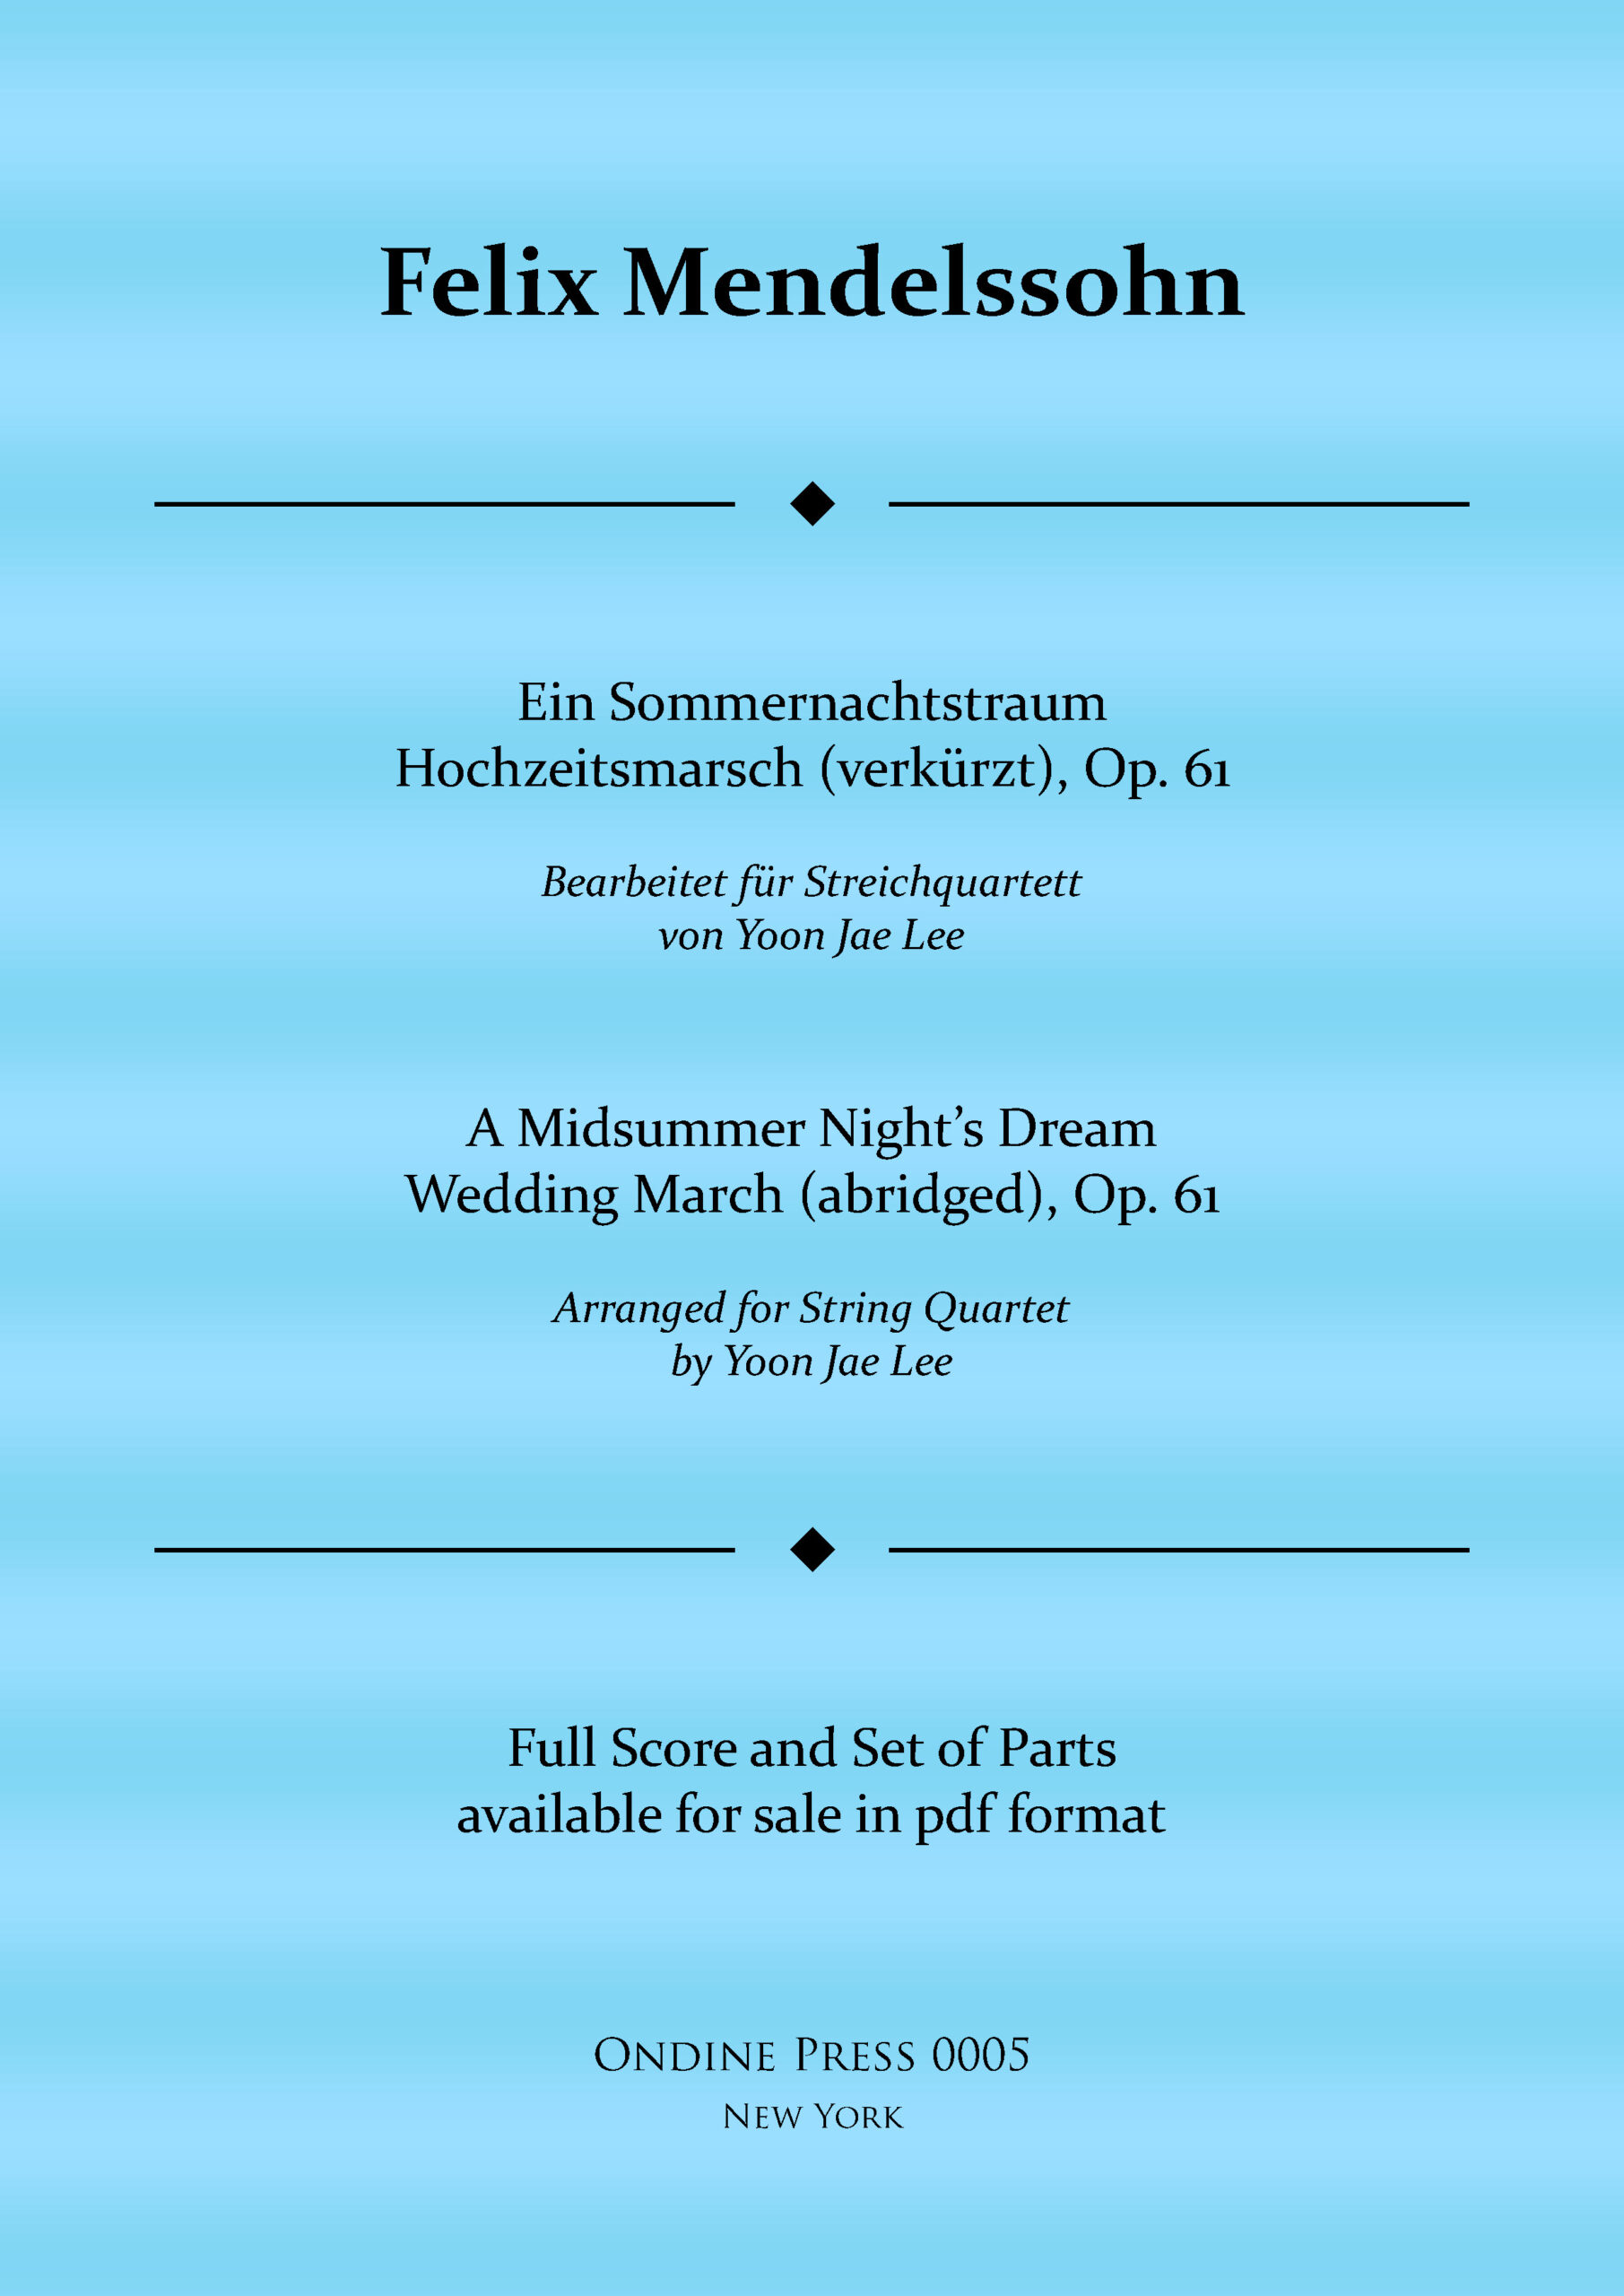 Mendelssohn Ein Sommernachtstraum Hochzeitsmarsch verkurzt Op. 61 web cover scaled